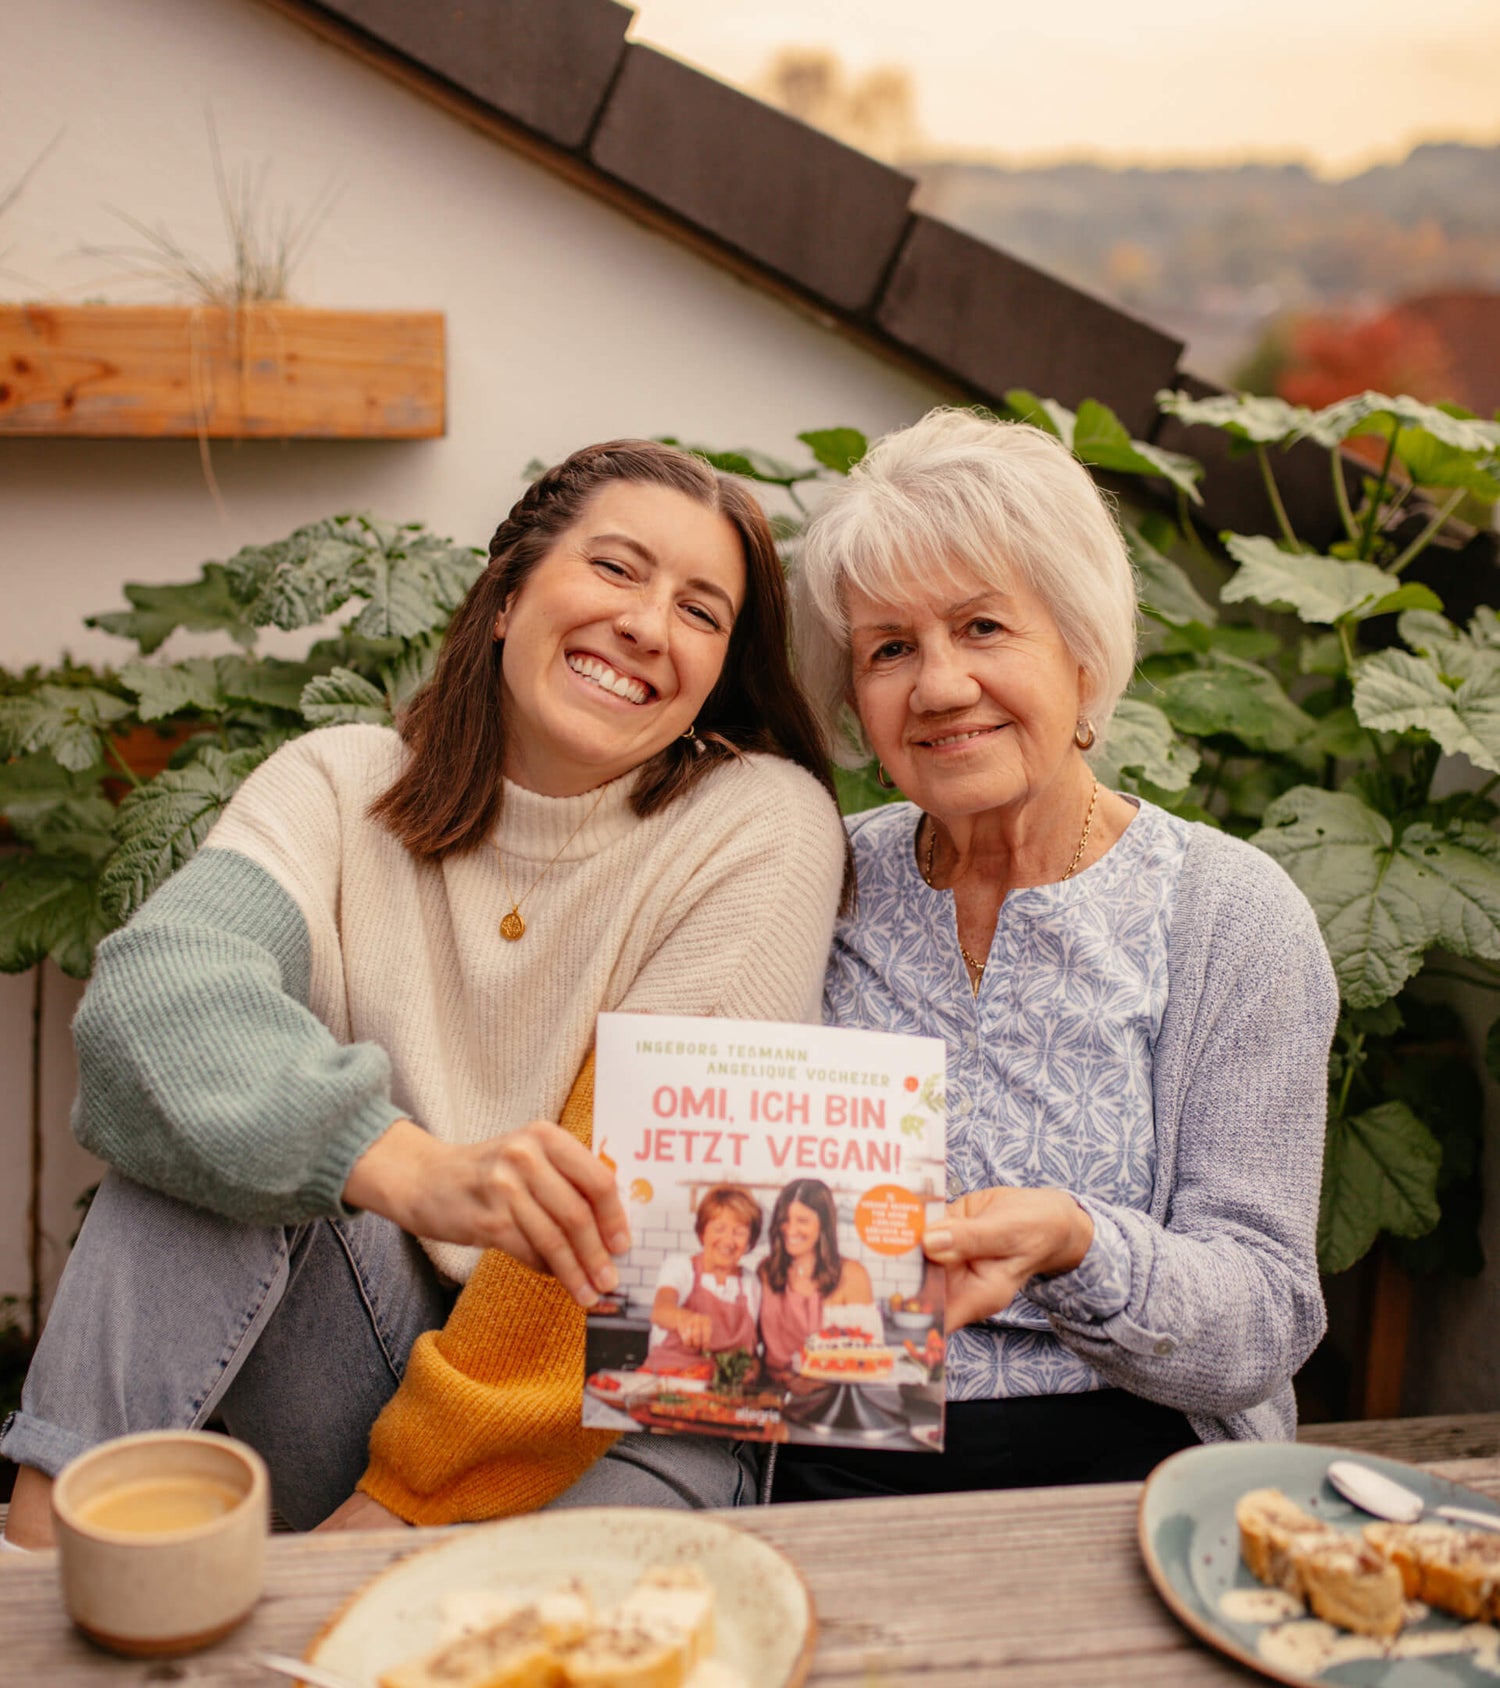 Angie und Omi auf der Terrasse mit ihrem Kochbuch "Omi, ich bin jetzt vegan!"